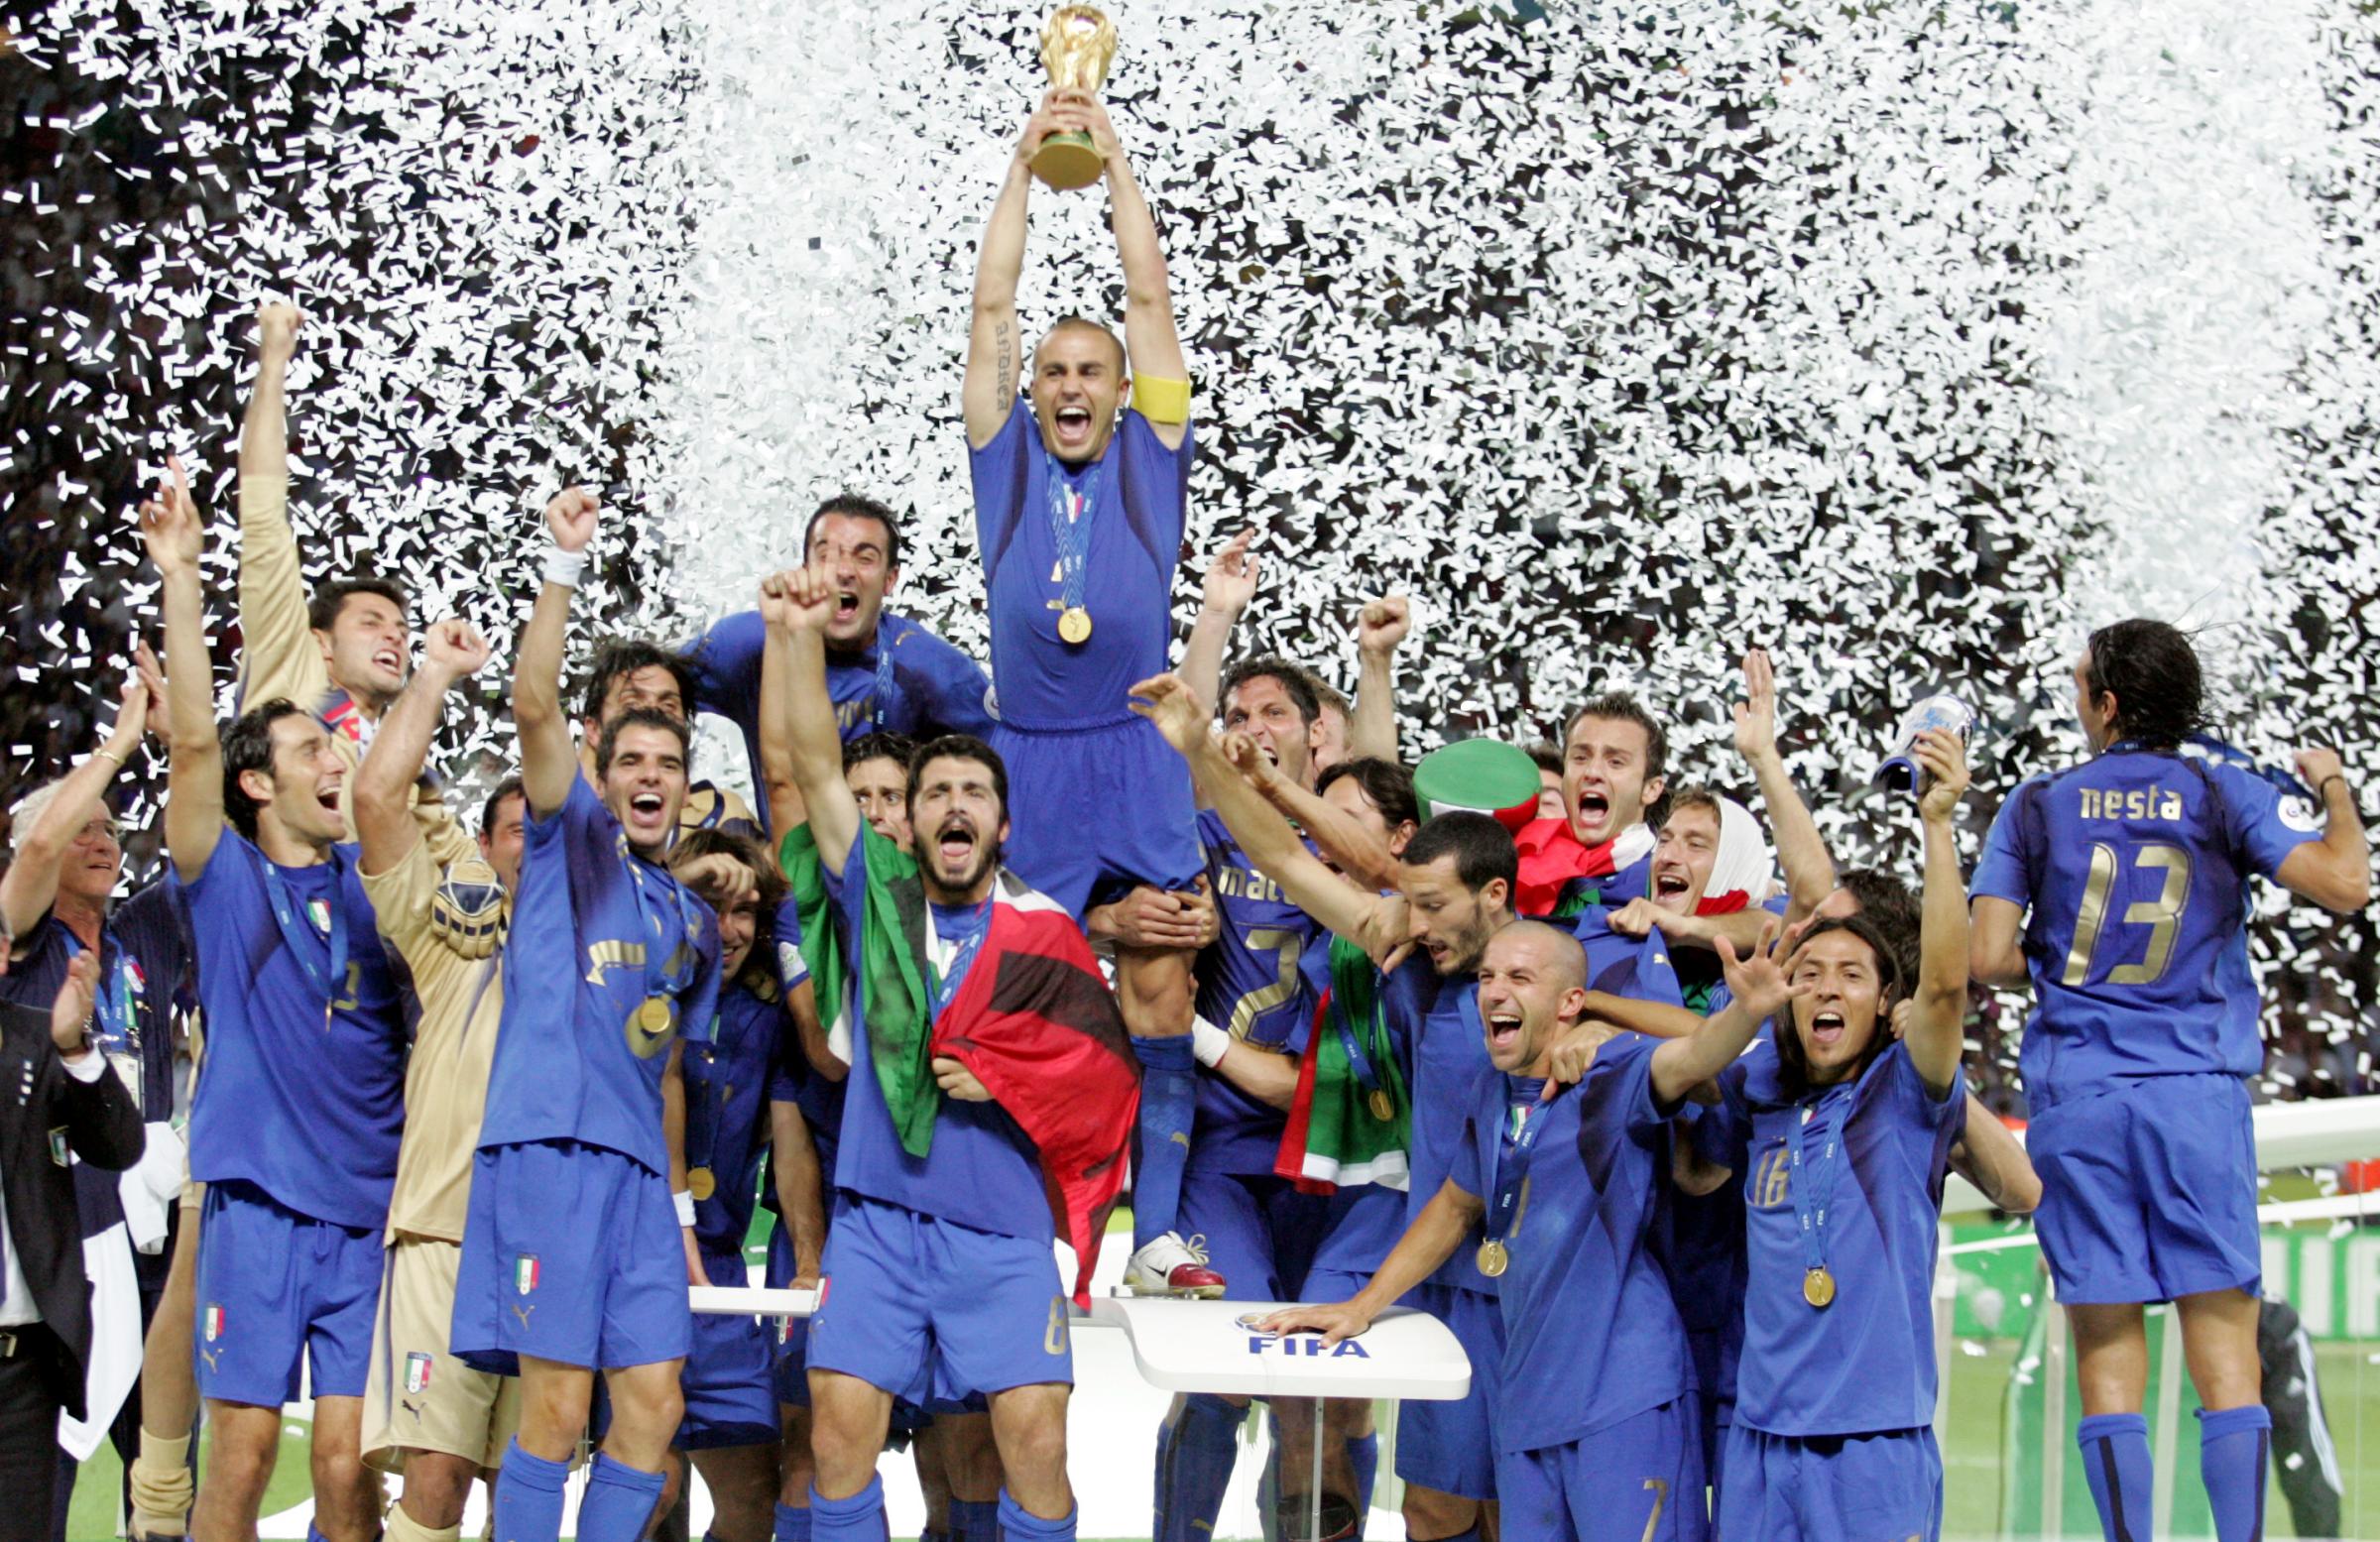 Mondiali 2006, un cimelio tanto caro all'Italia rischia di fare una